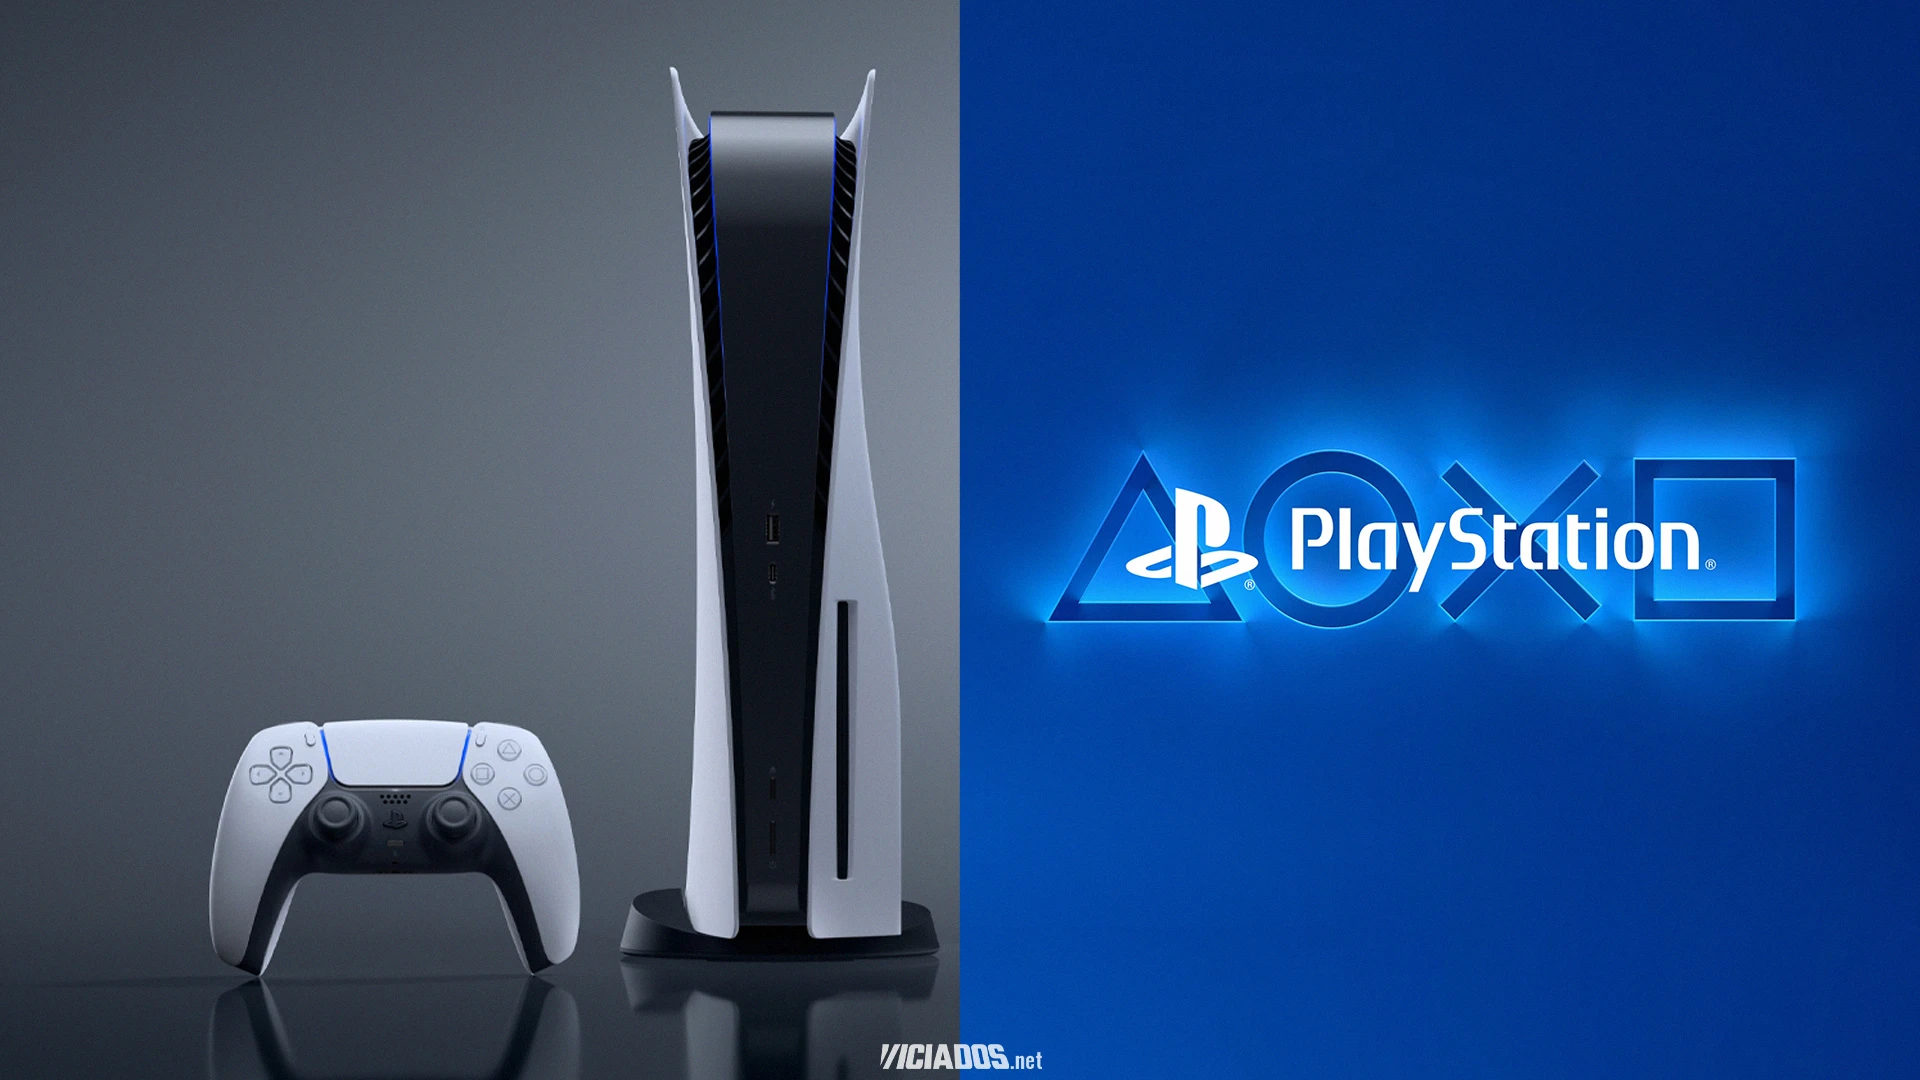 Sony libera grande desconto no PlayStation 5; A primeira promoção oficial no Brasil! 2023 Viciados